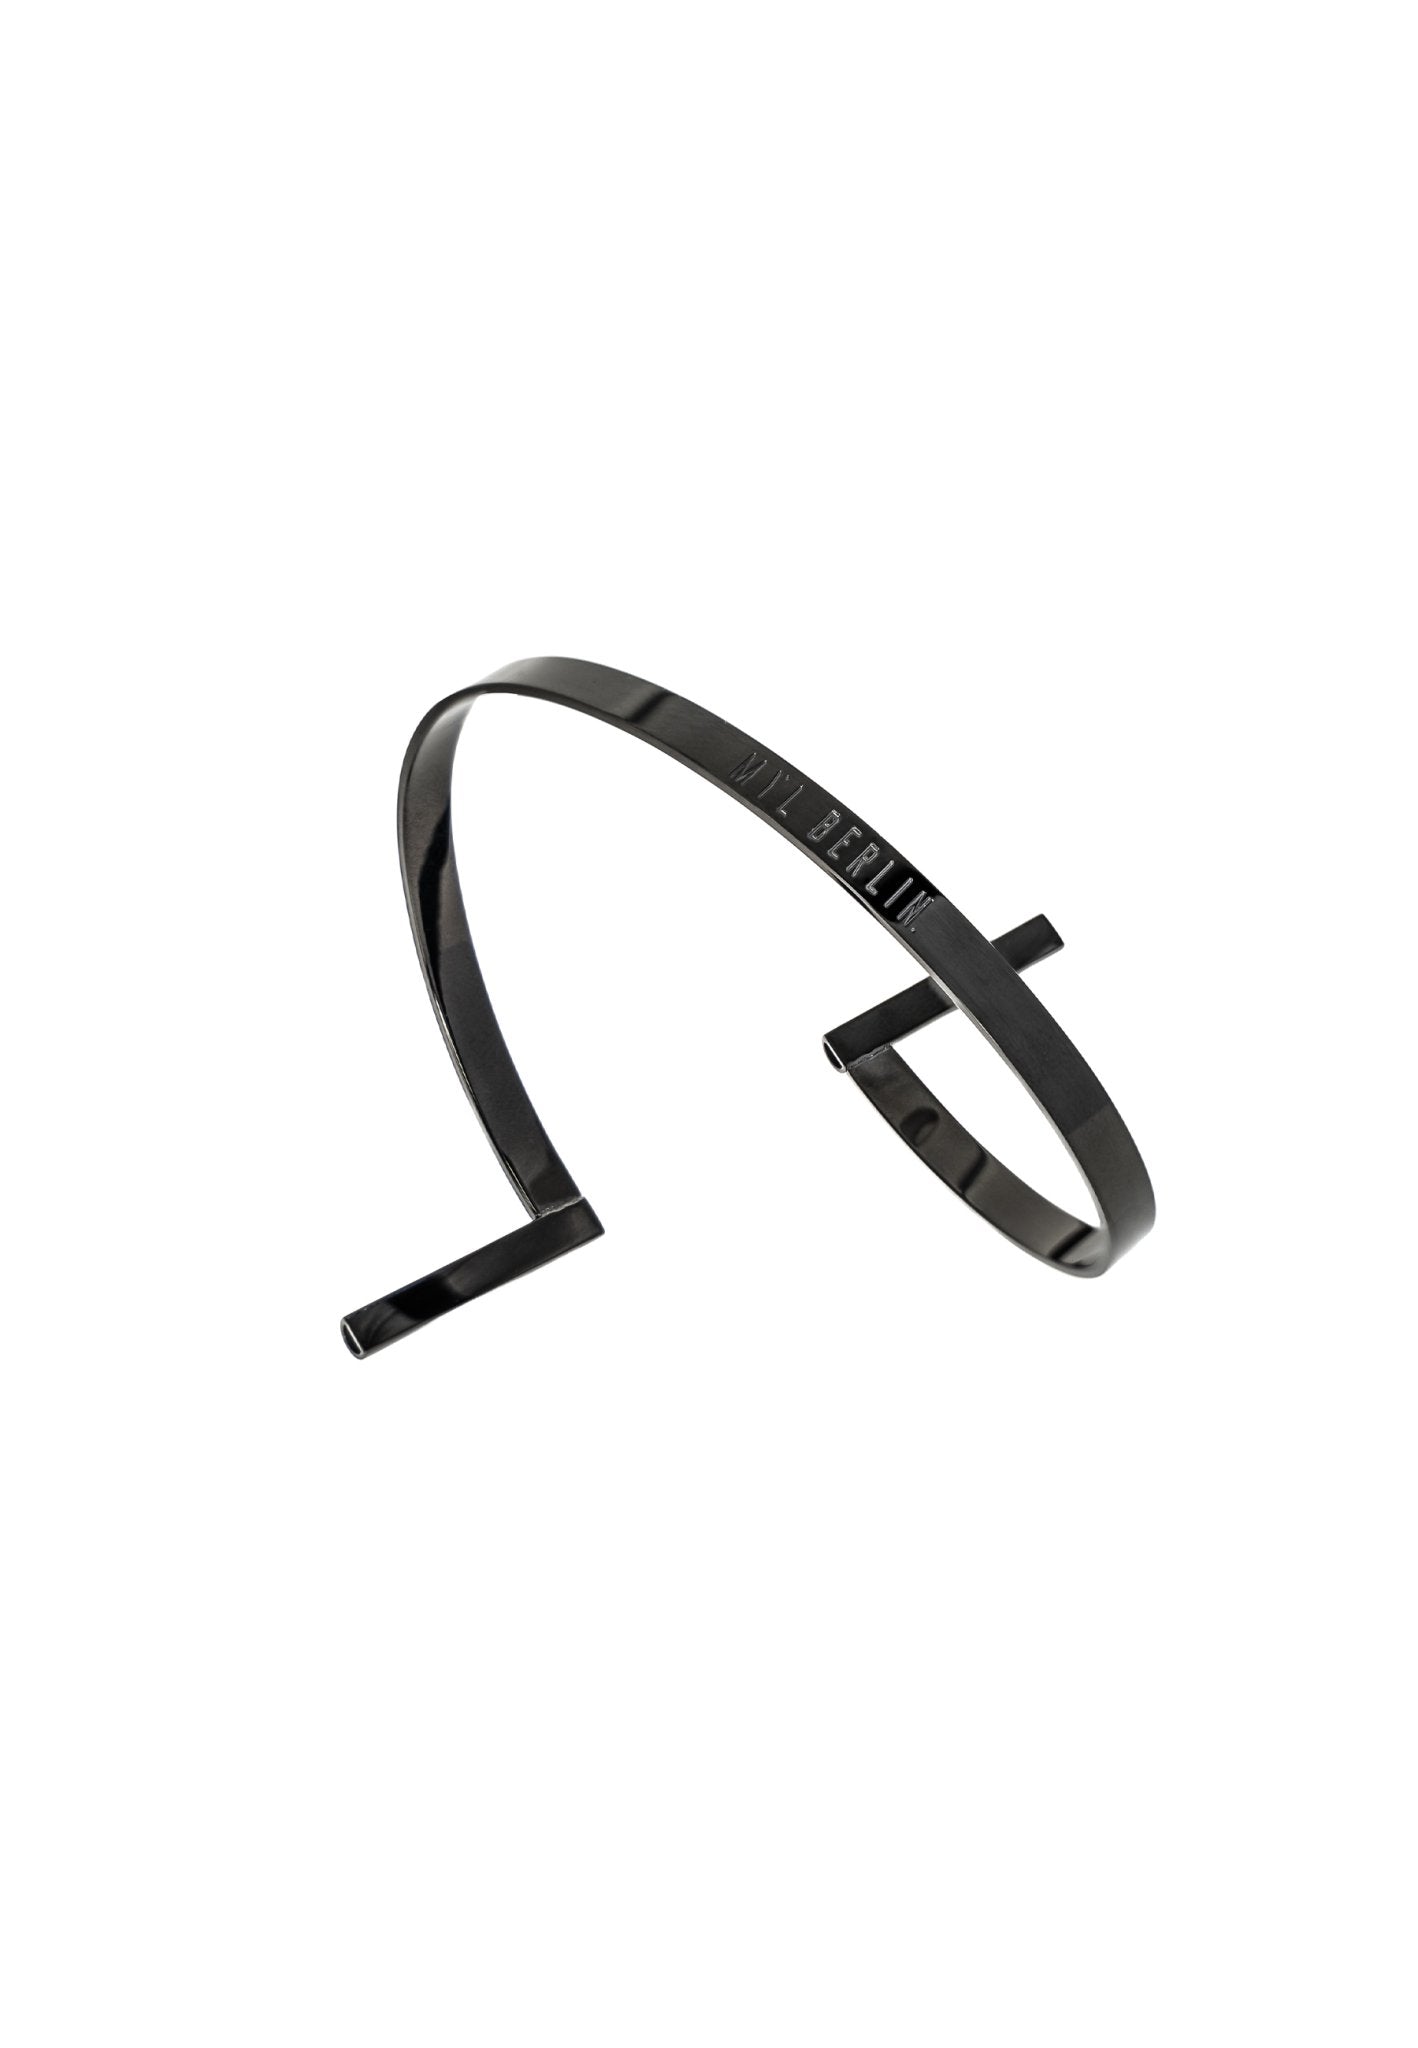 Flexible Upper Arm Bracelet “Serpentine” - MYL BERLIN - 4260654112665 - 4260654112665